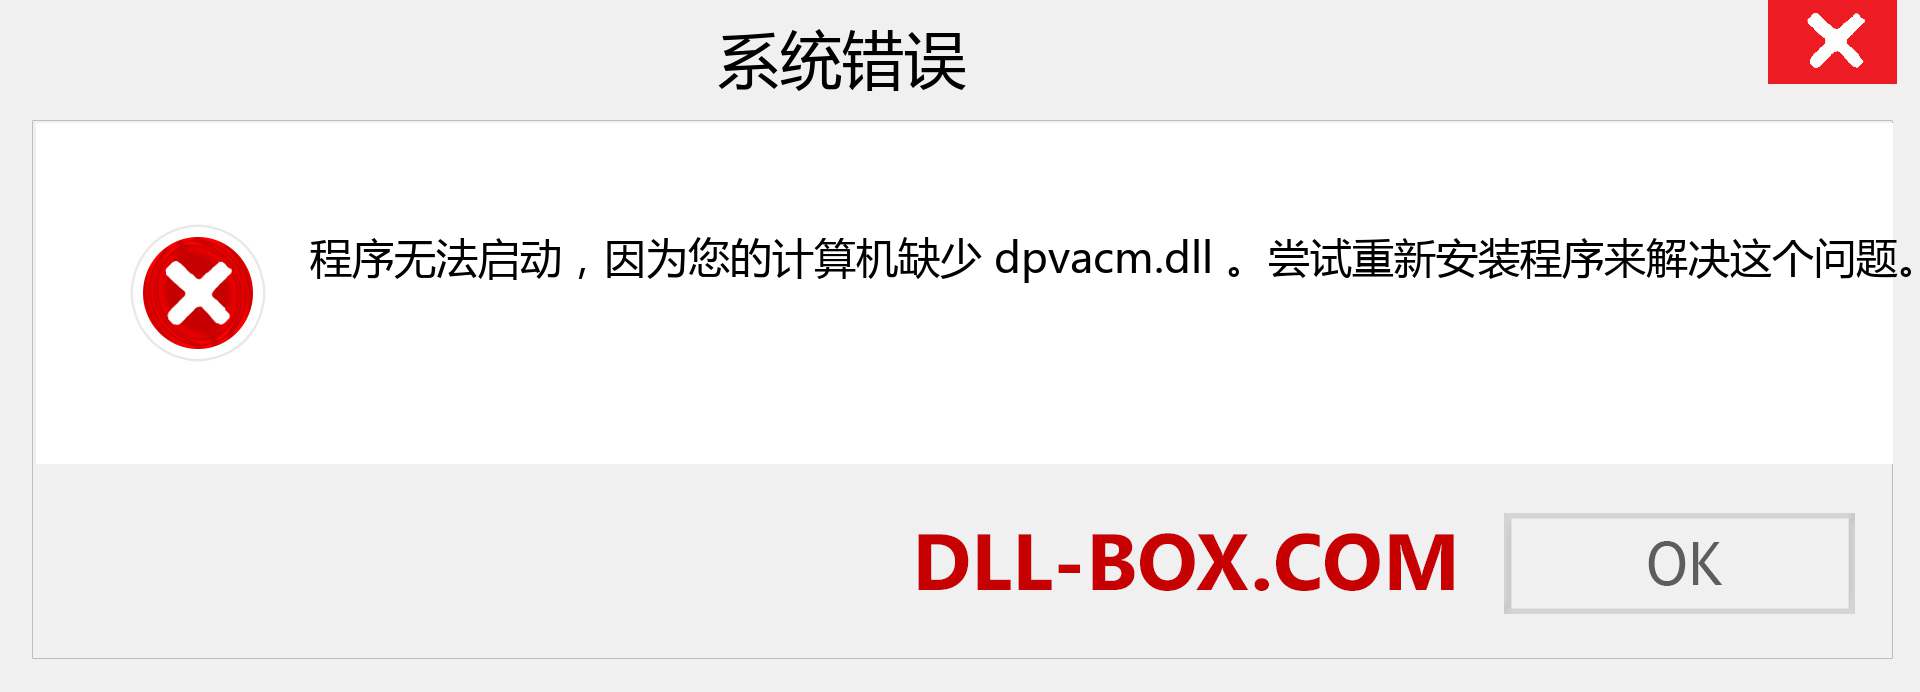 dpvacm.dll 文件丢失？。 适用于 Windows 7、8、10 的下载 - 修复 Windows、照片、图像上的 dpvacm dll 丢失错误